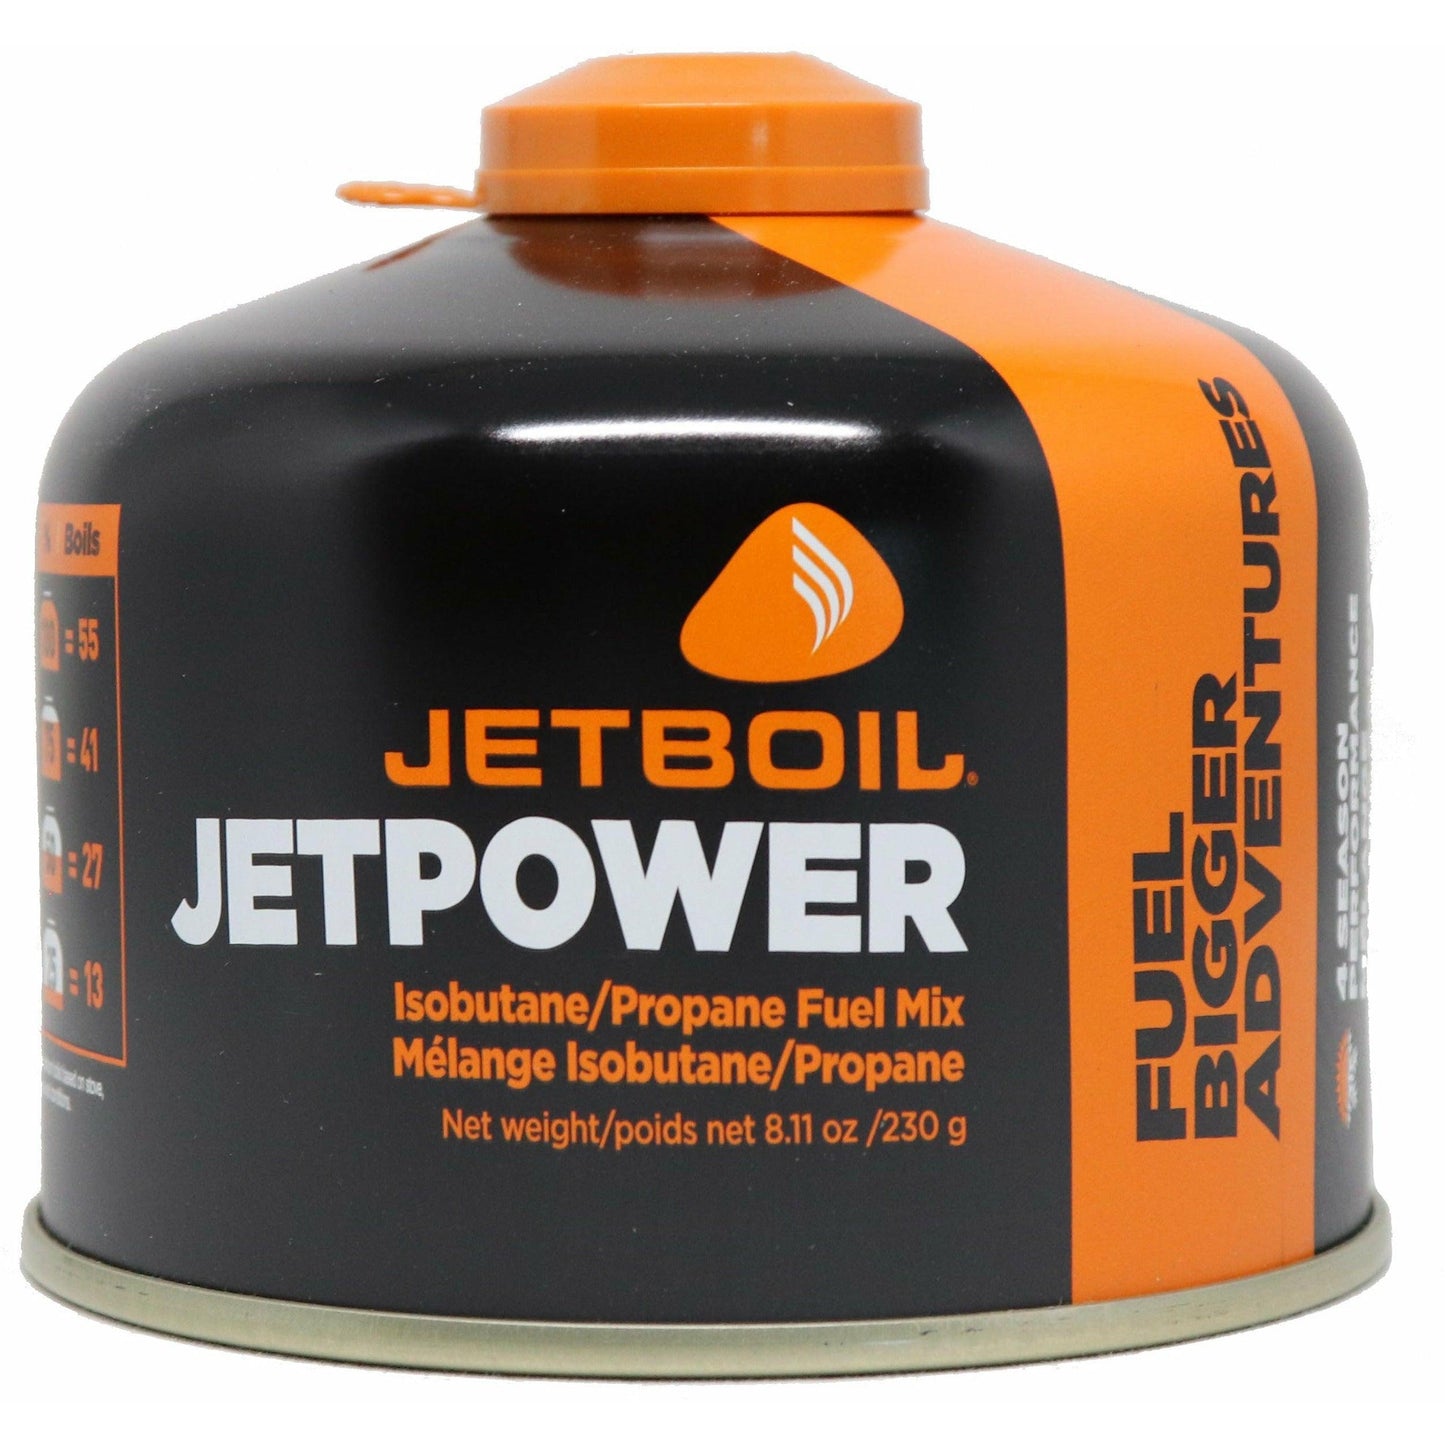 Jetboil Jetpower 230 Isobutane/Propane Fuel Canister